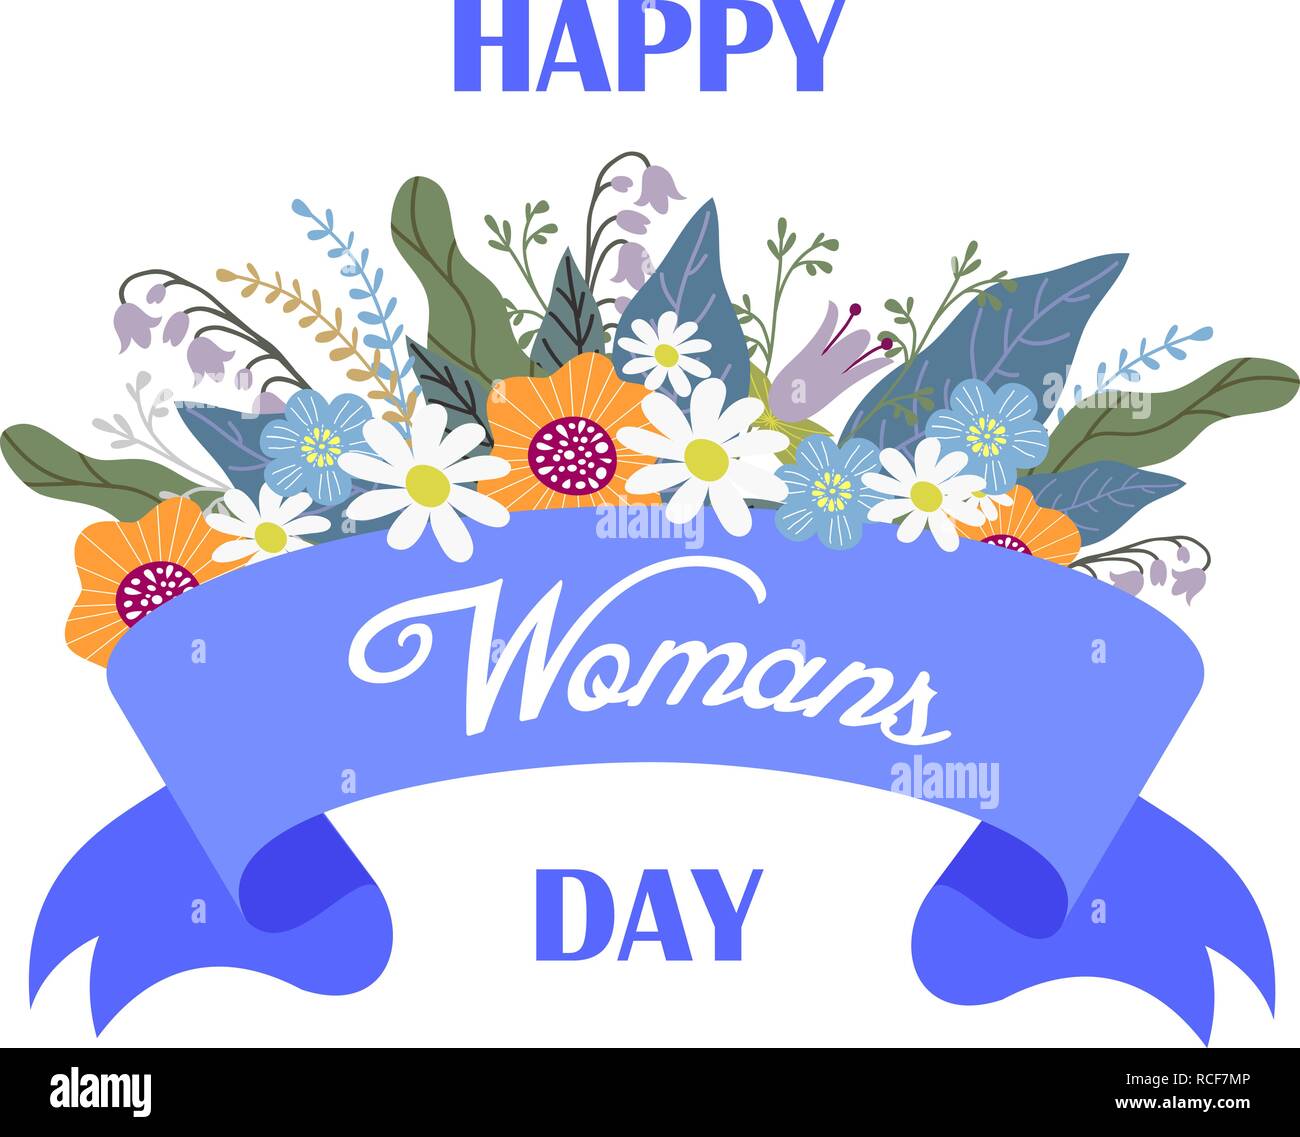 Happy womans Tag, Floral Hand zeichnen Design Konzept, Blumenstrauß und Band mit Text auf einem weißen Hintergrund, Vektor Stock Vektor